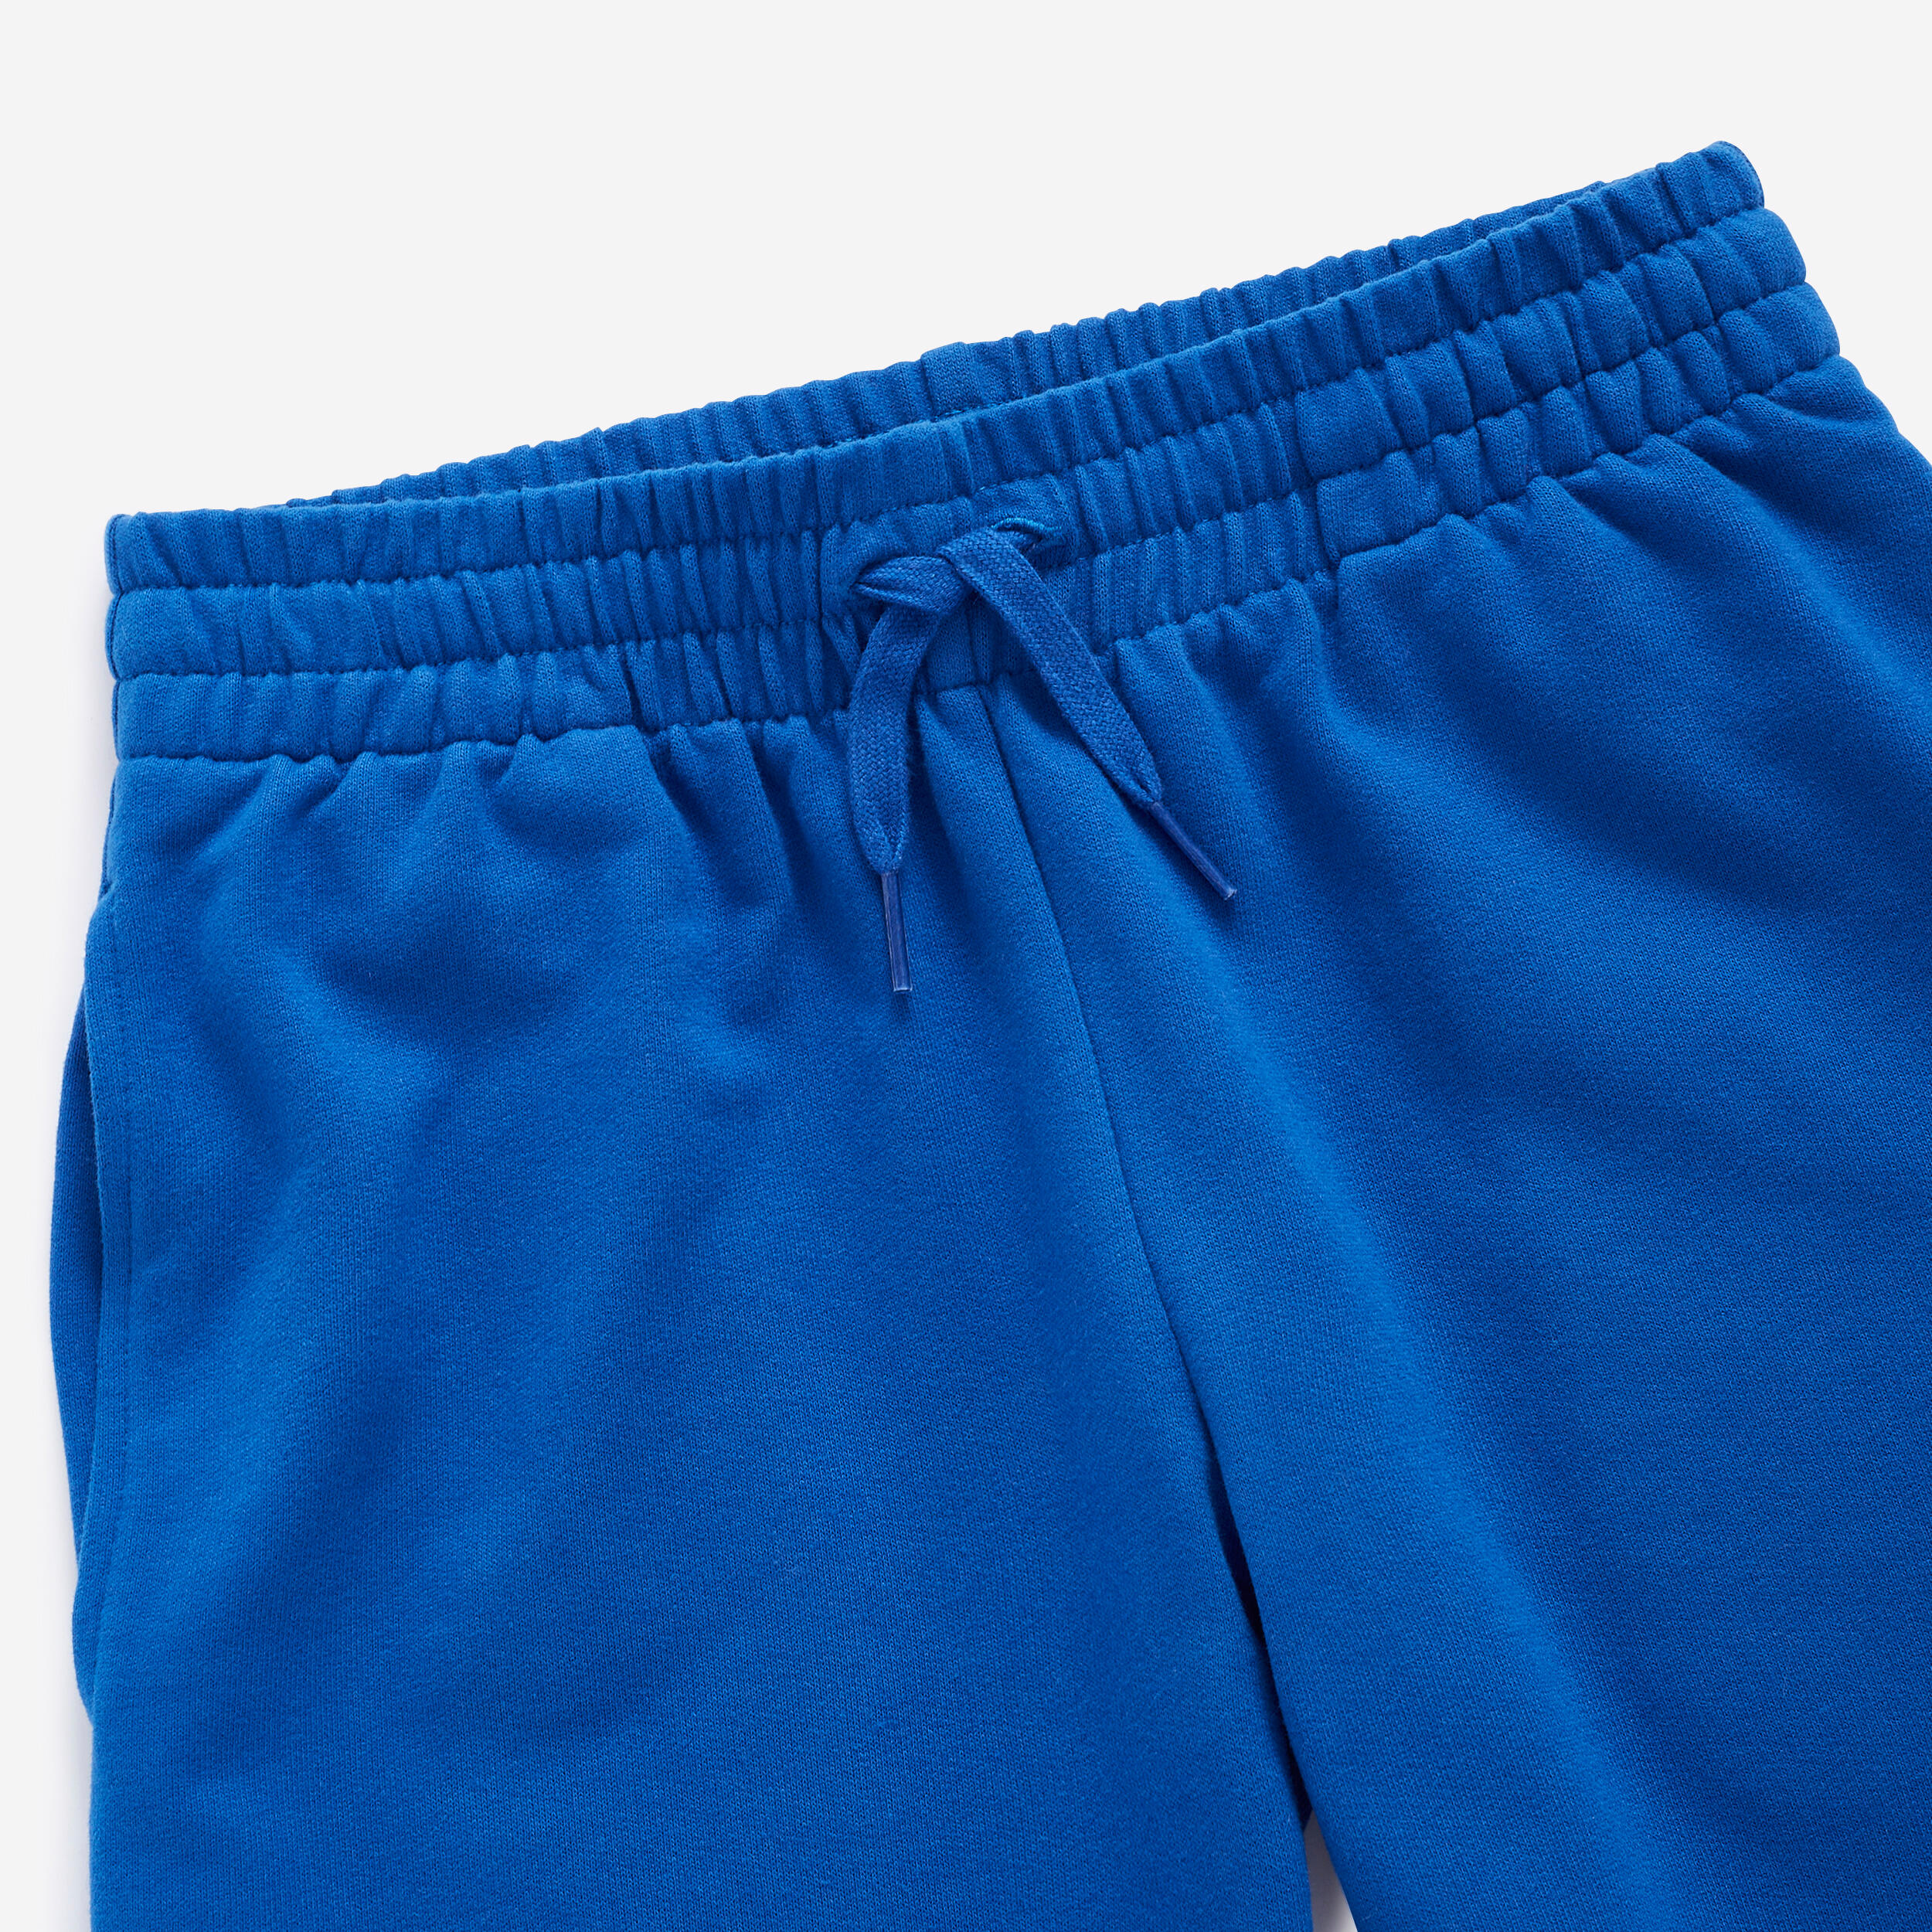 Kids' Unisex Cotton Shorts - Blue 3/4